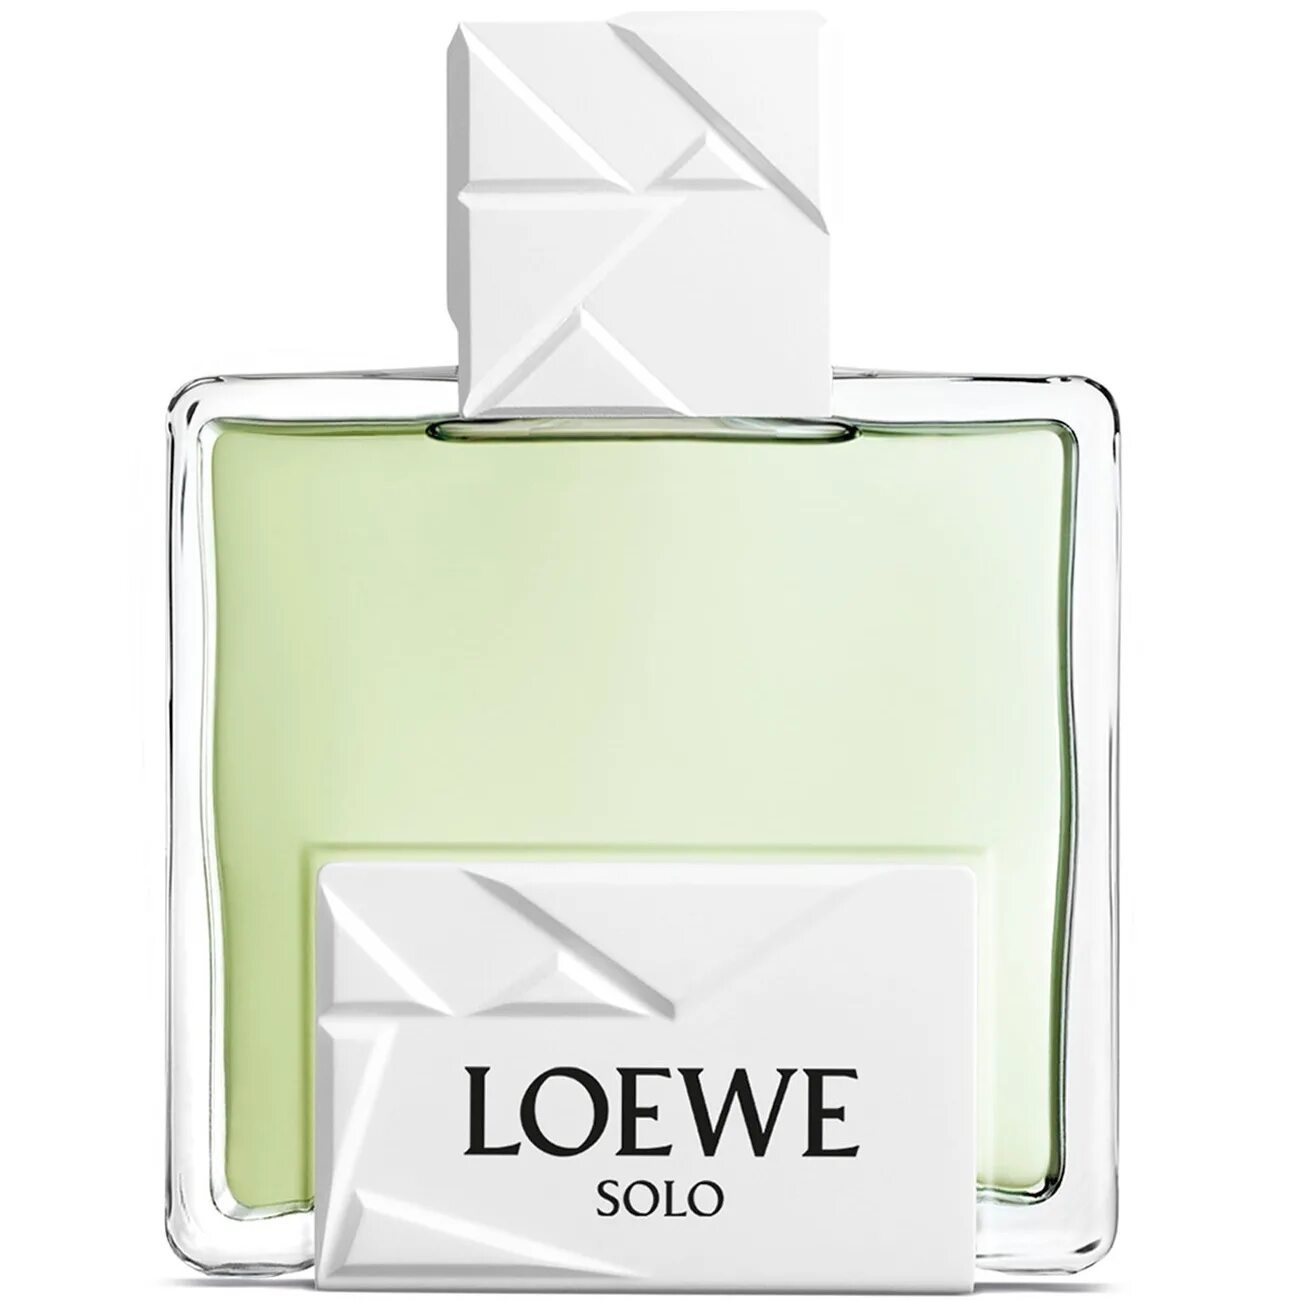 Solo loewe туалетная вода. Мужская туалетная вода solo Loewe. Туалетная вода solo Loewe 50 ml. Мужские духи solo Loewe Origami. Loewe solo туалет вода мужской.